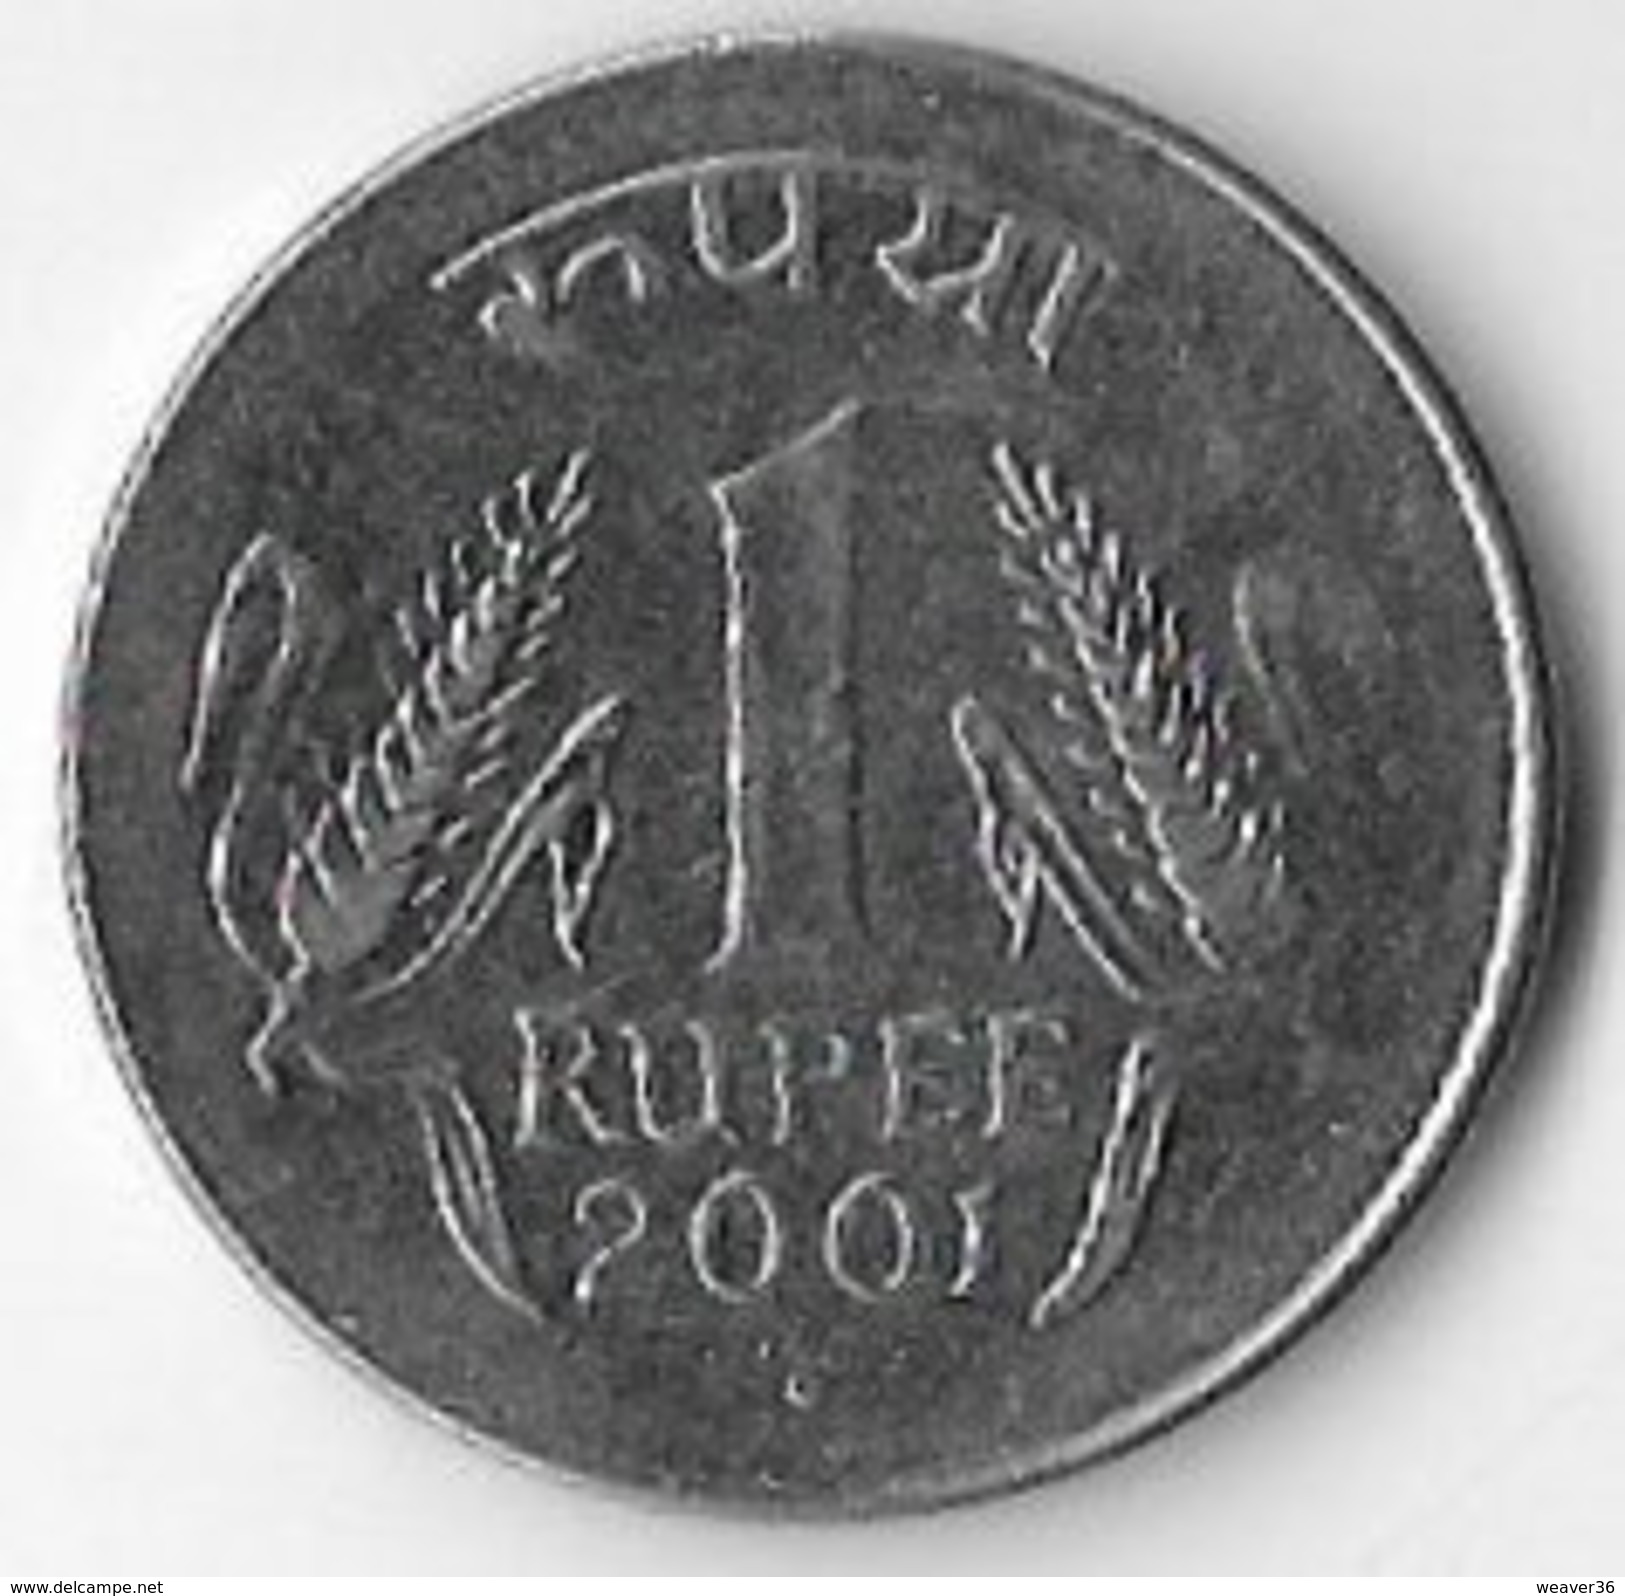 India 2001 1 Rupee [C168/1D] - India